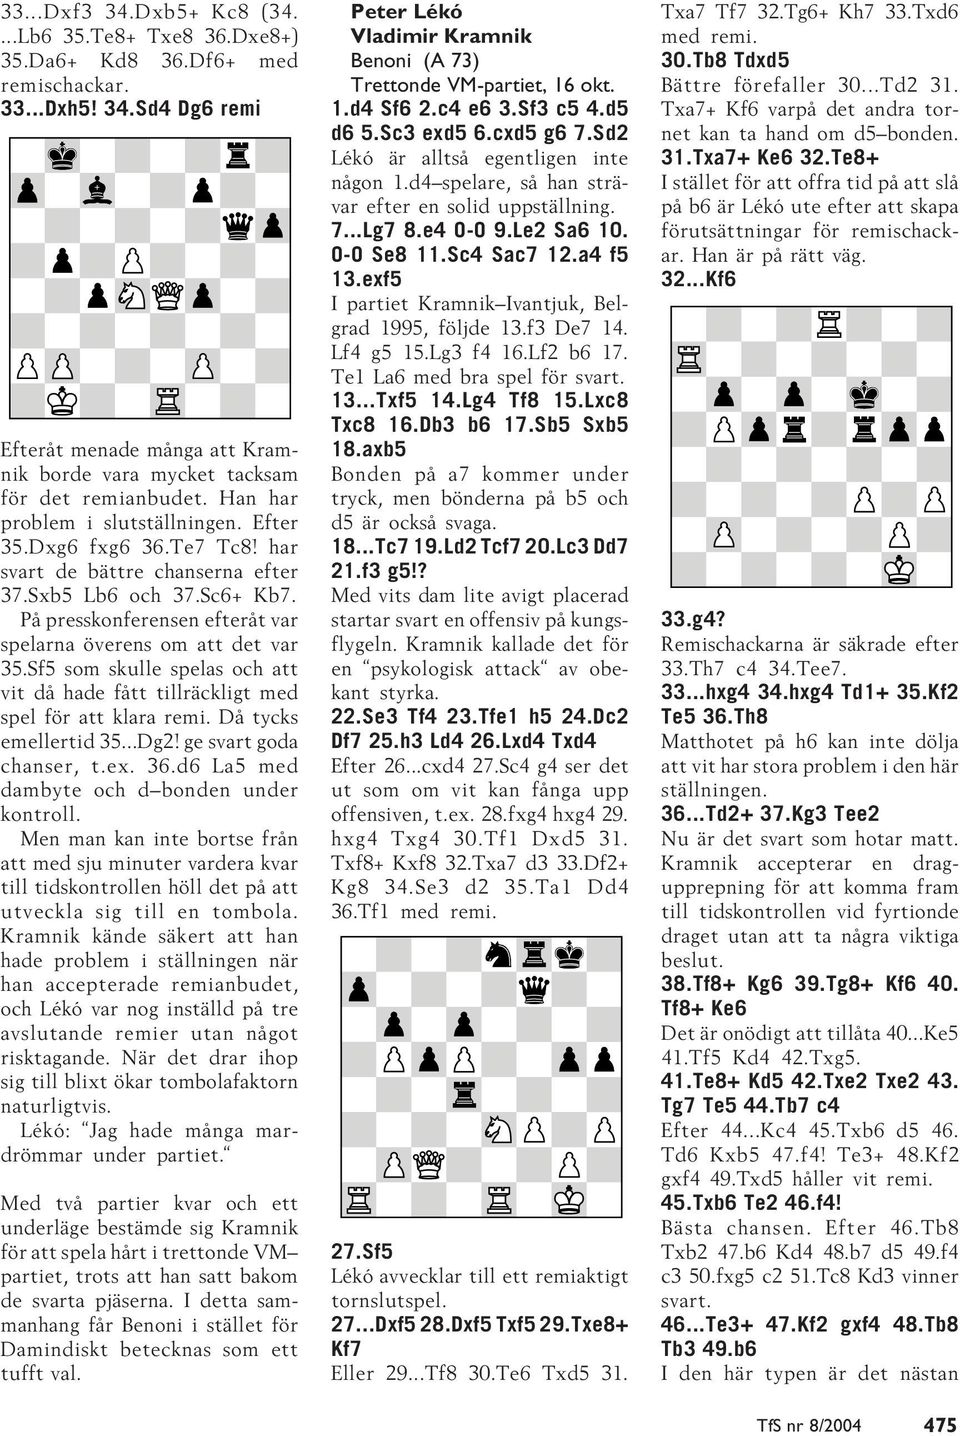 Sf5 som skulle spelas och att vit då hade fått tillräckligt med spel för att klara remi. Då tycks emellertid 35...Dg2! ge svart goda chanser, t.ex. 36.d6 La5 med dambyte och d bonden under kontroll.